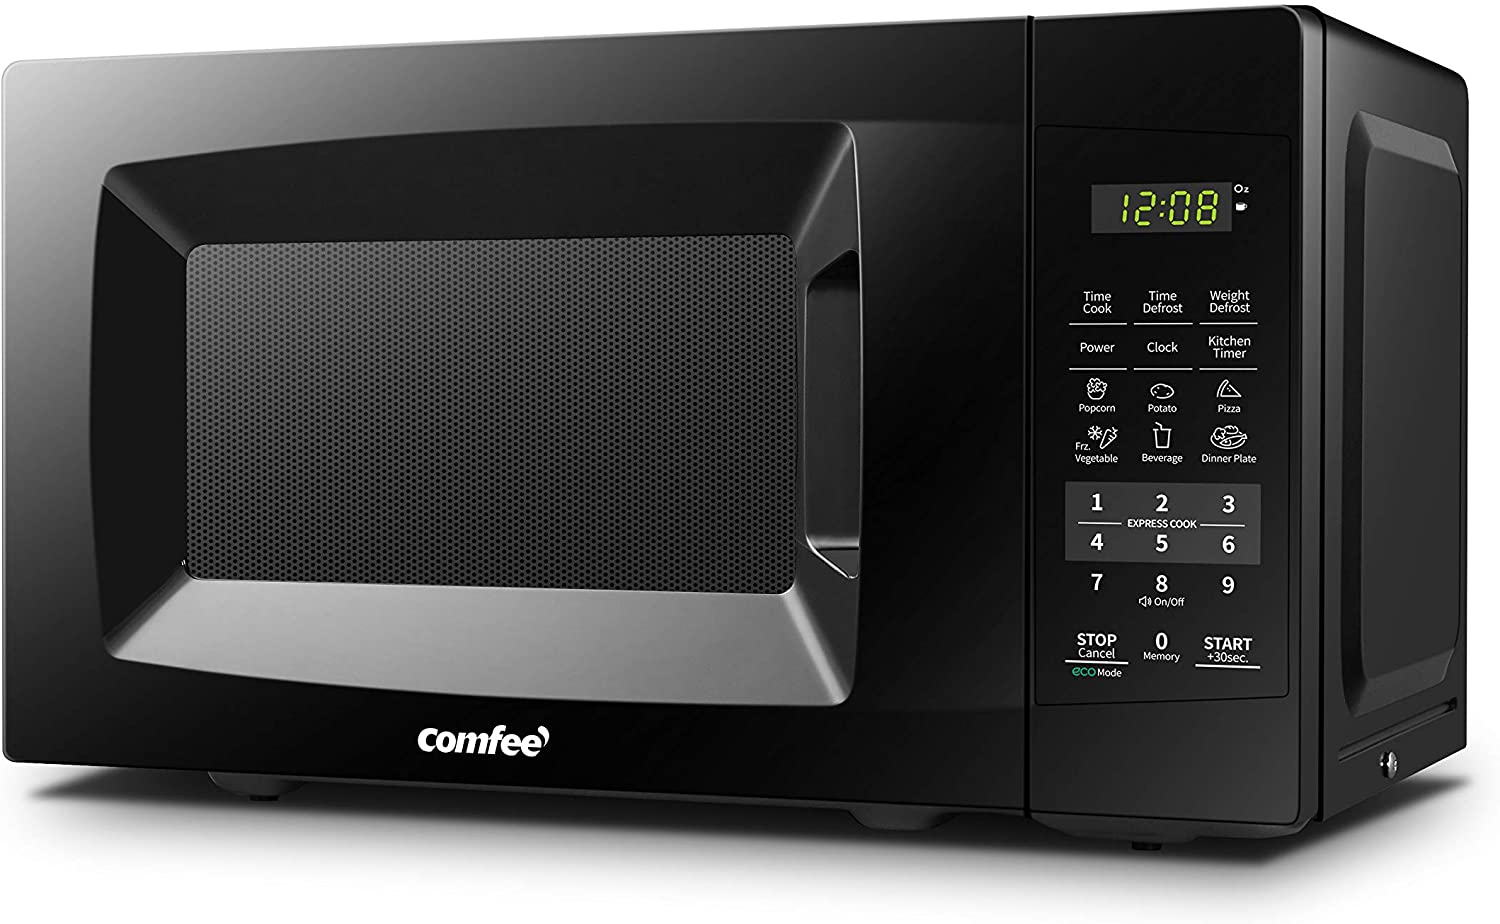 COMFEE’ Portable Energy Saving Countertop Microwave